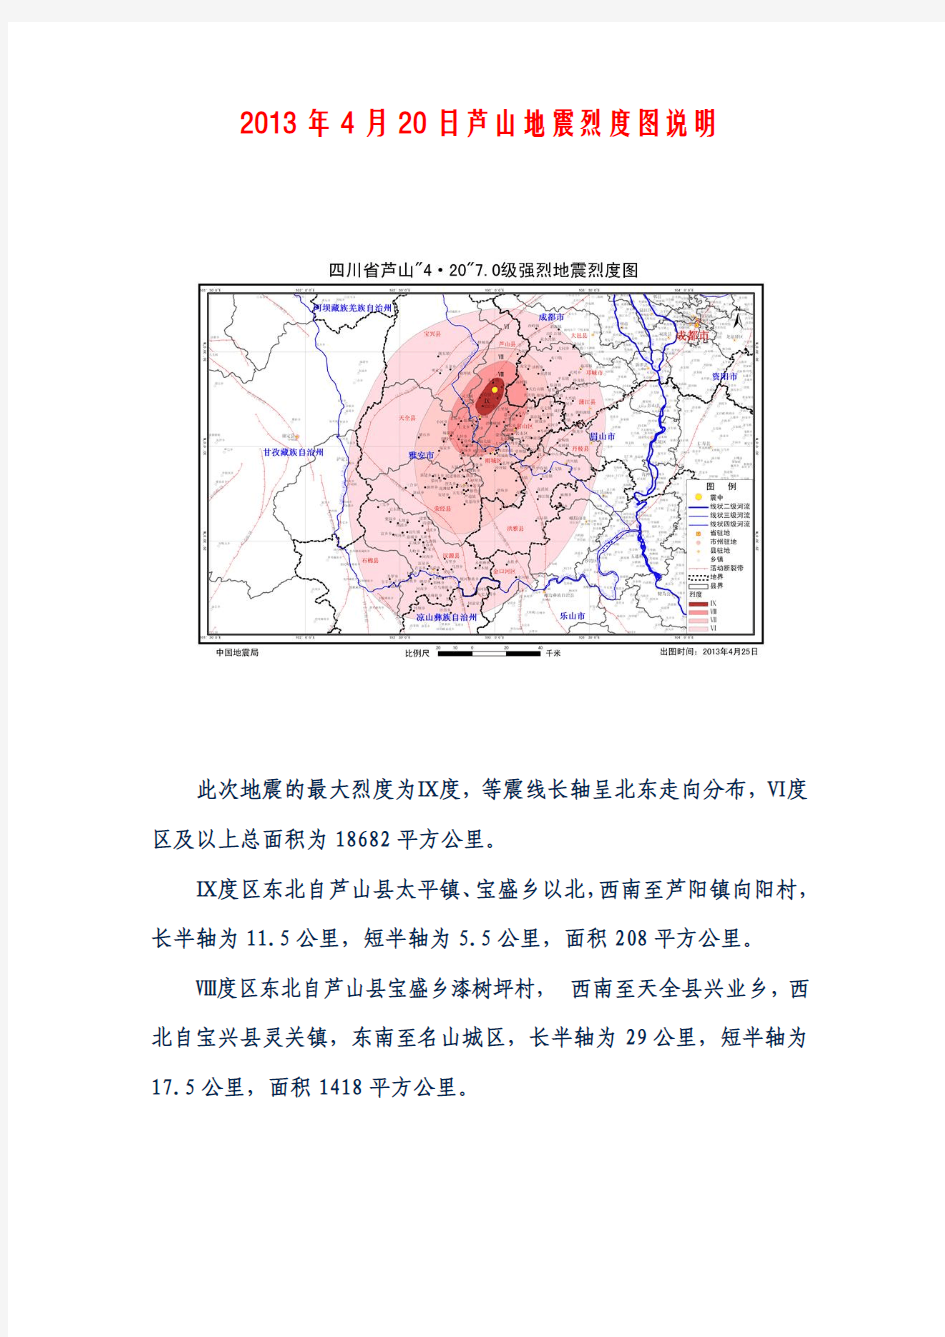 2013年4月20日芦山地震烈度图说明